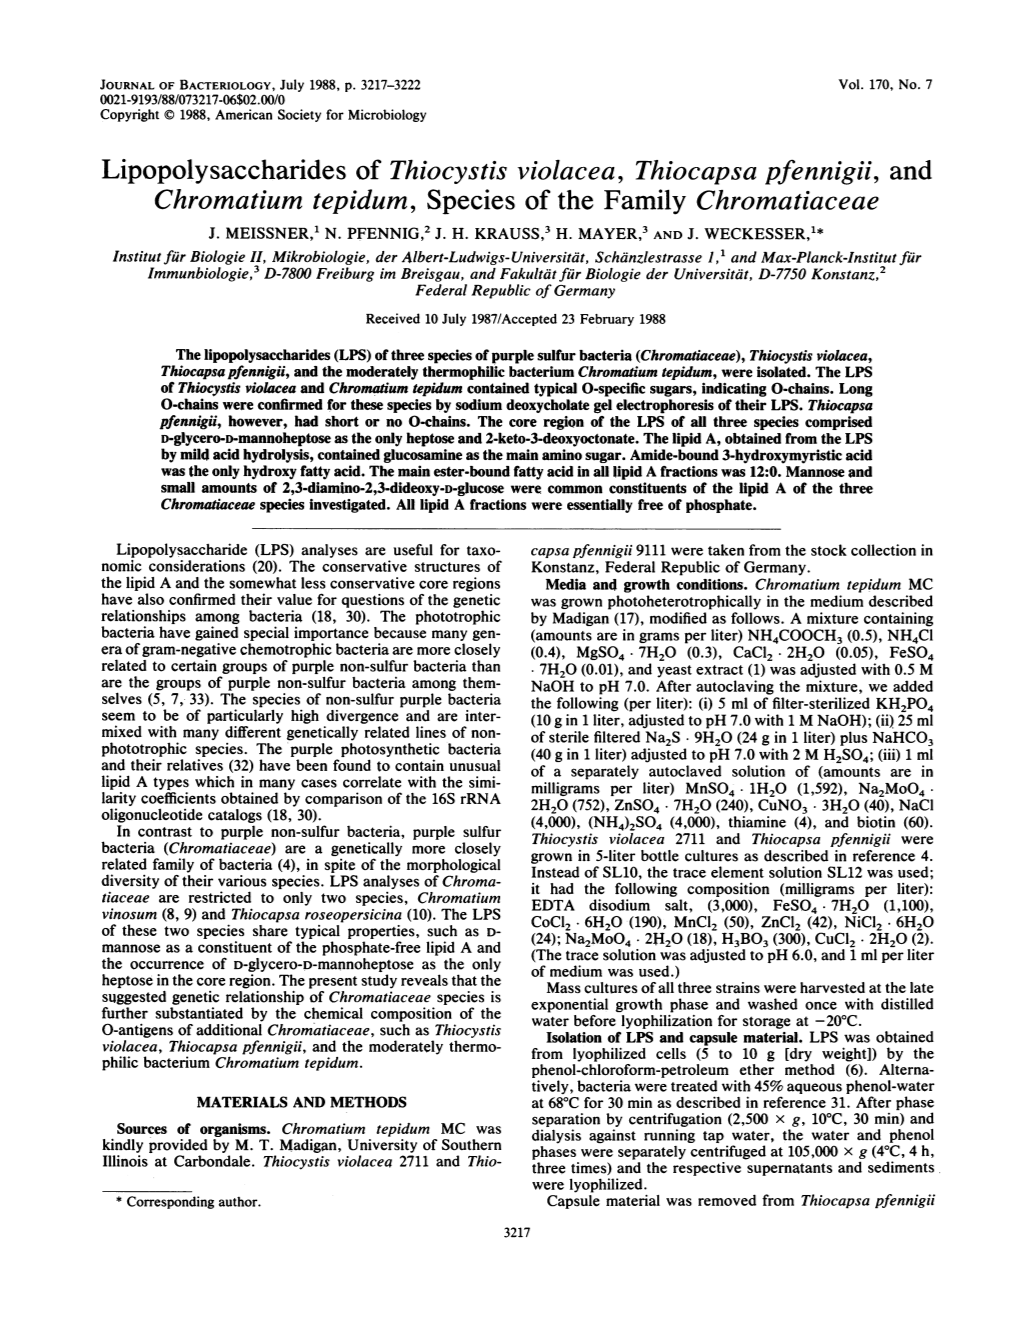 Chromatium Tepidum, Species of the Family Chromatiaceae J